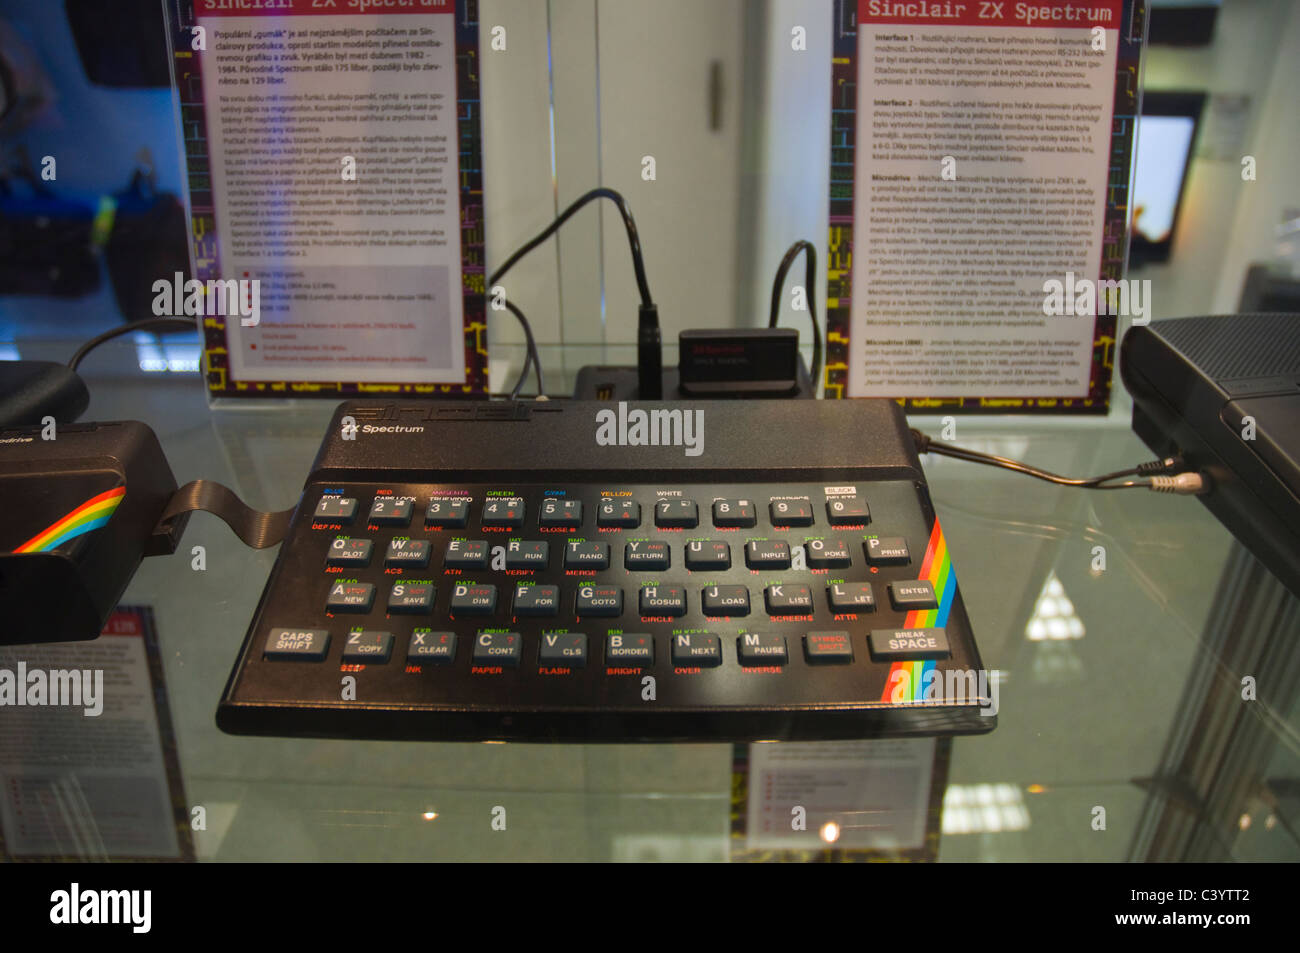 Sinclair ZX Spectrum ordinateur personnel dela 1980 Banque D'Images